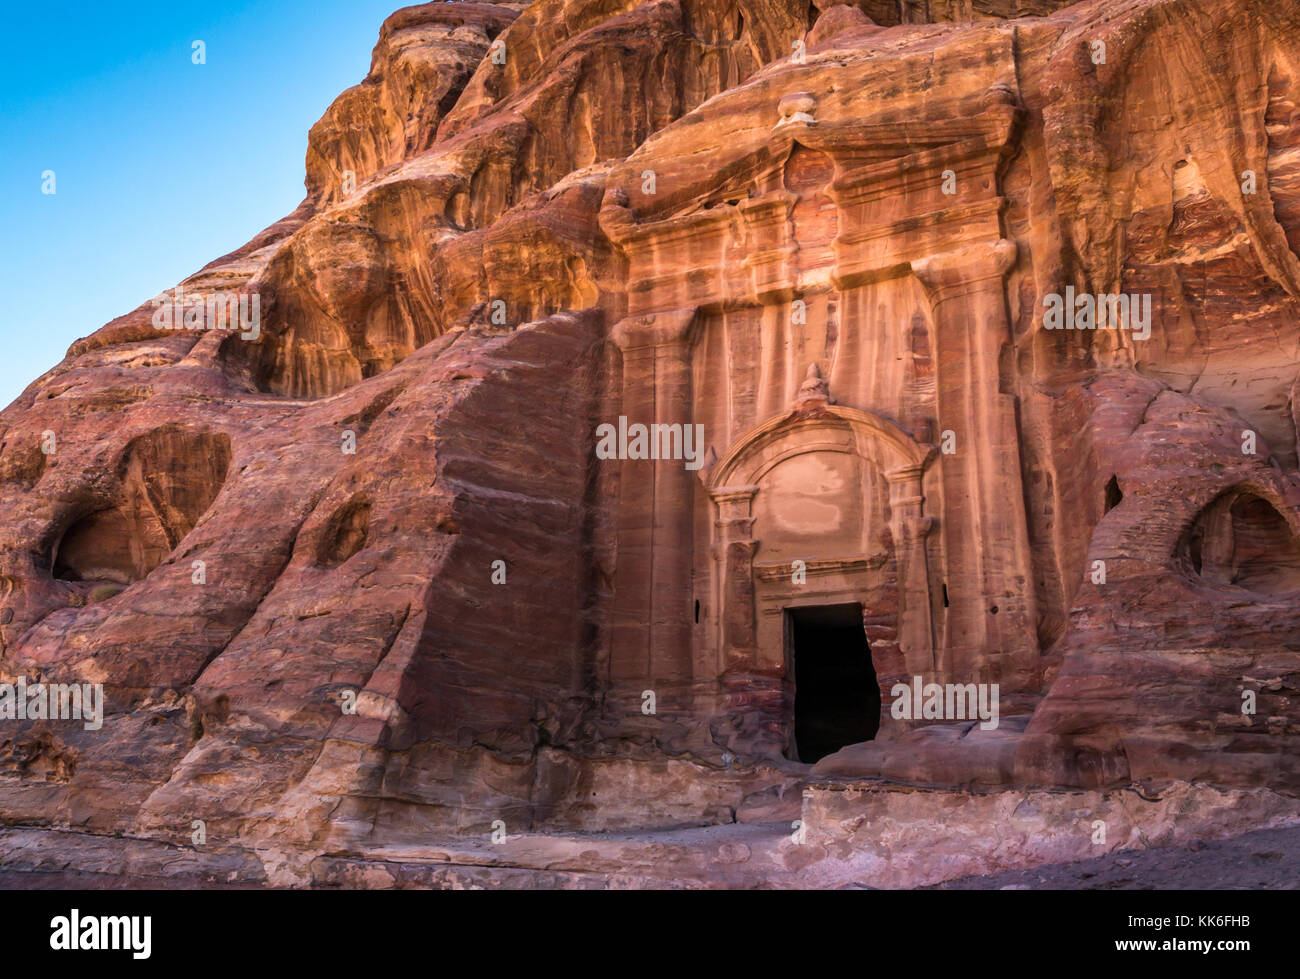 Nabataean tumba tallada en la piedra arenisca roja acantilado en Wadi Farasa, Petra, Jordania, Oriente Medio, en ruta a pie desde el alto lugar de sacrificios Foto de stock